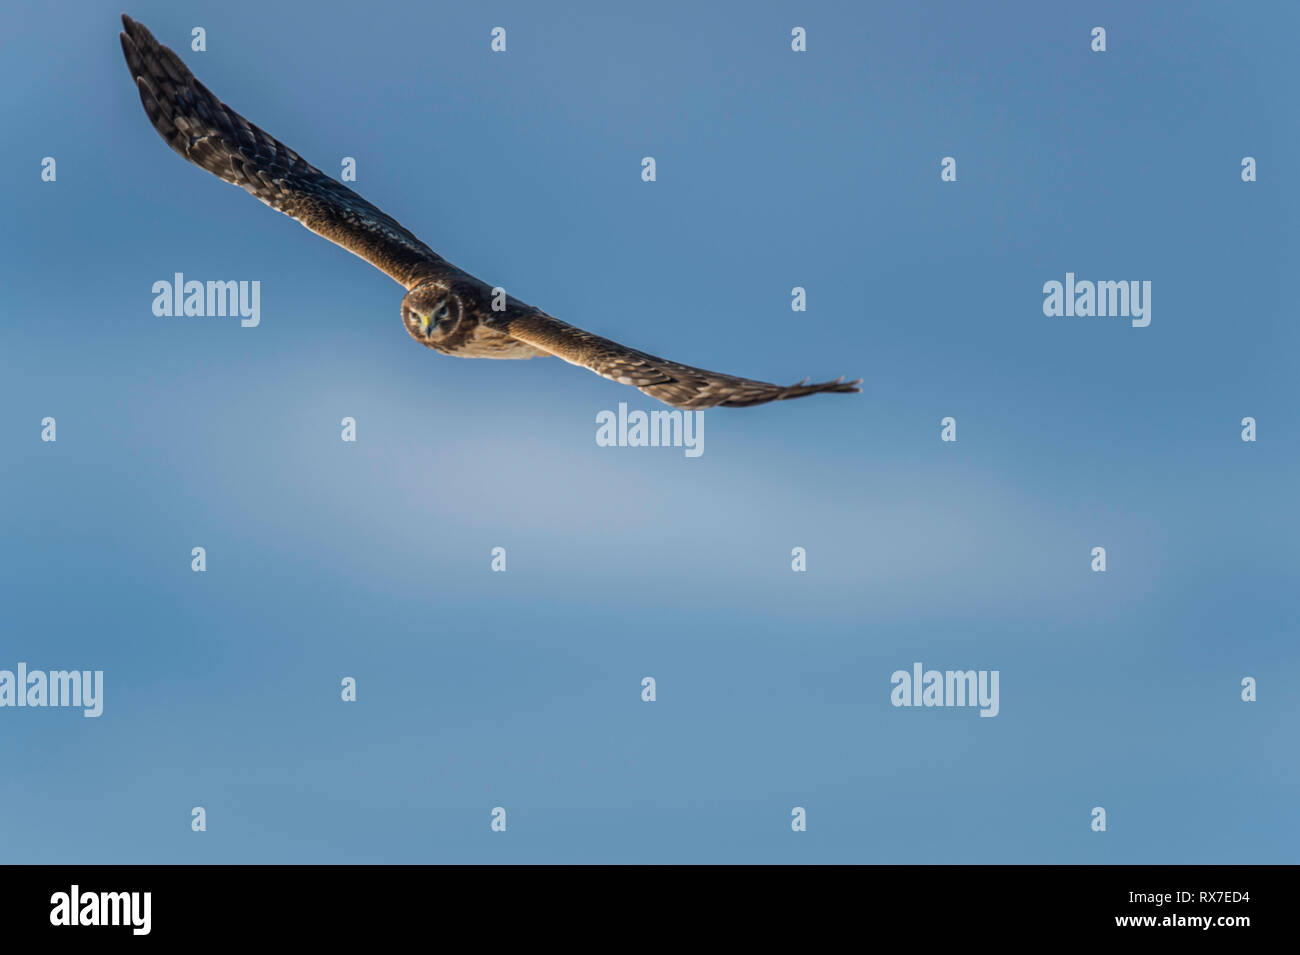 Northern Harrier volar a baja altura sobre el suelo cuando la caza, tejiendo hacia adelante y hacia atrás a través de los campos y pantanos que mirar y escuchar para pequeños animales. Comen en el suelo, y ellos se encaraman sobre postes bajos o árboles. Foto de stock